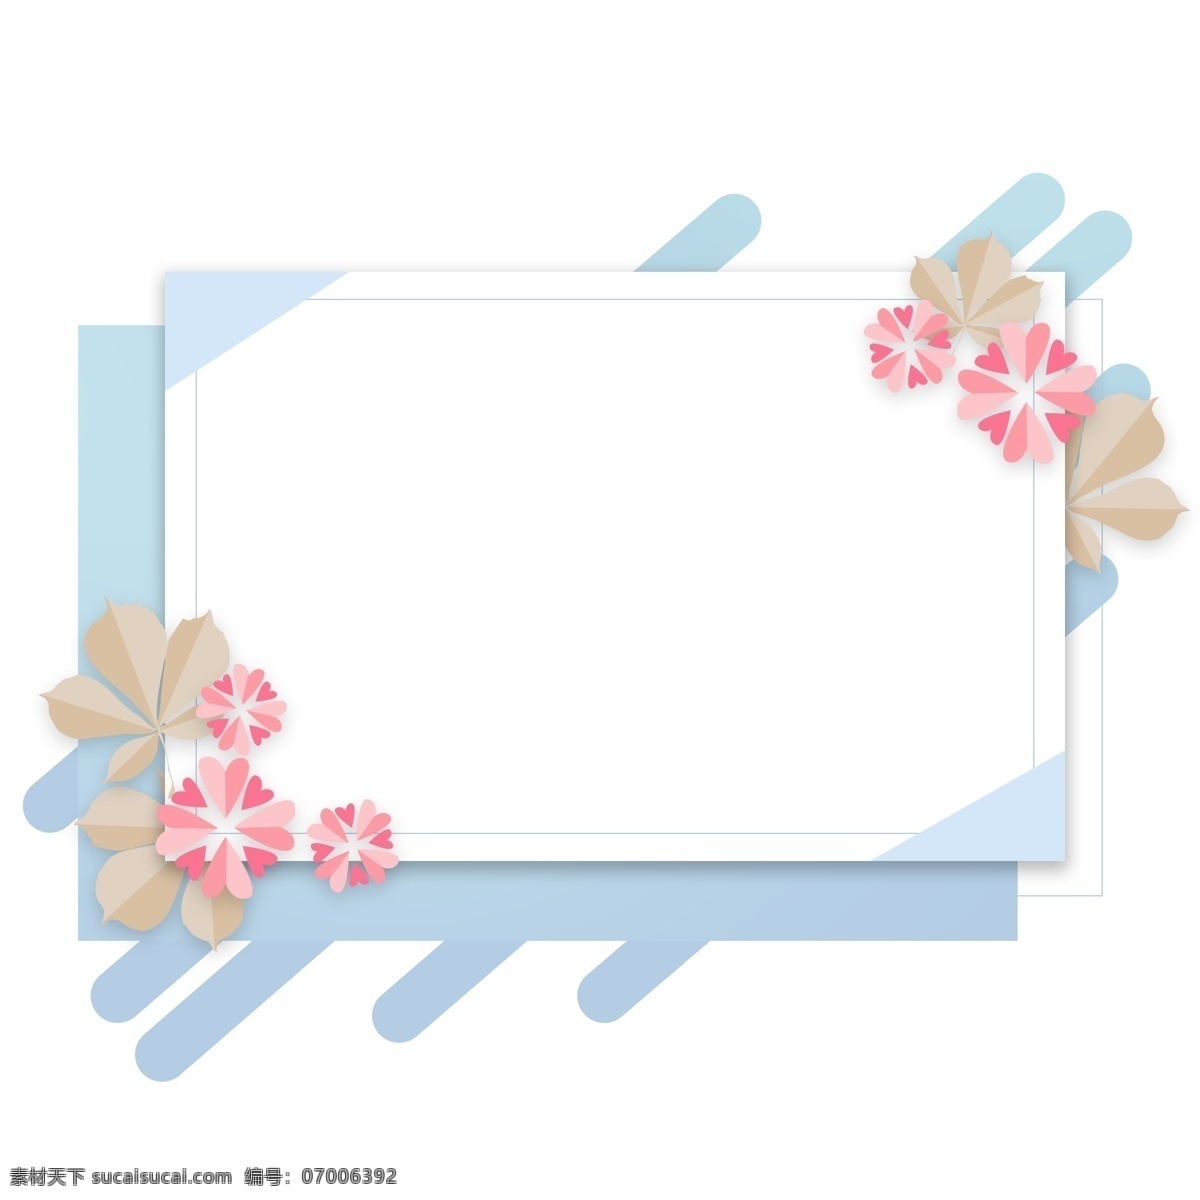 蓝色 手绘 折纸 花卉 植物 卡通 边框 对话框 清新